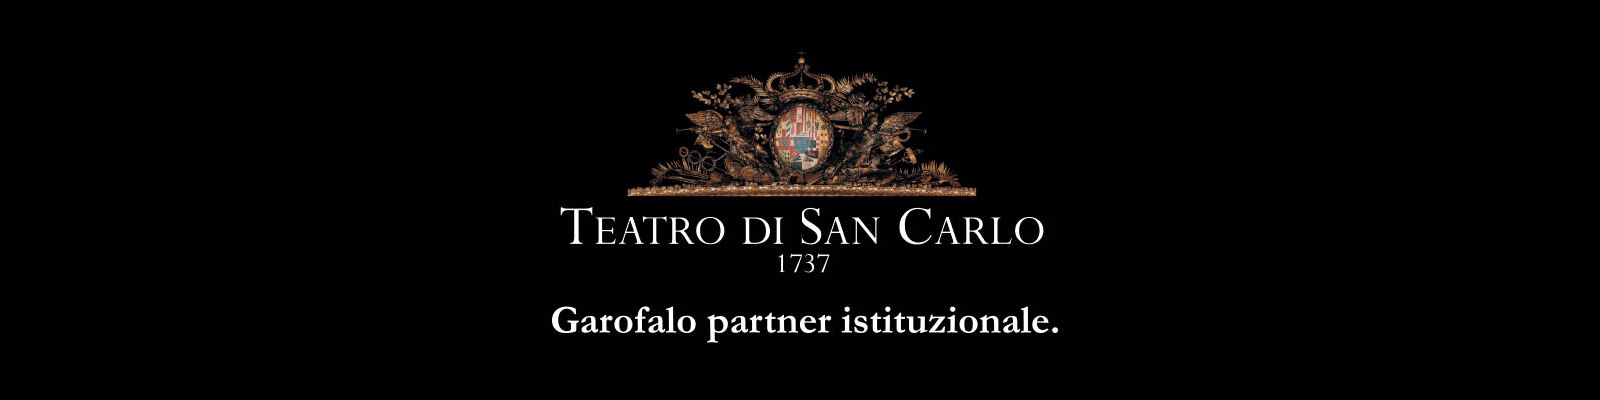 Pasta Garofalo, patrocinador del Teatro S. Carlo